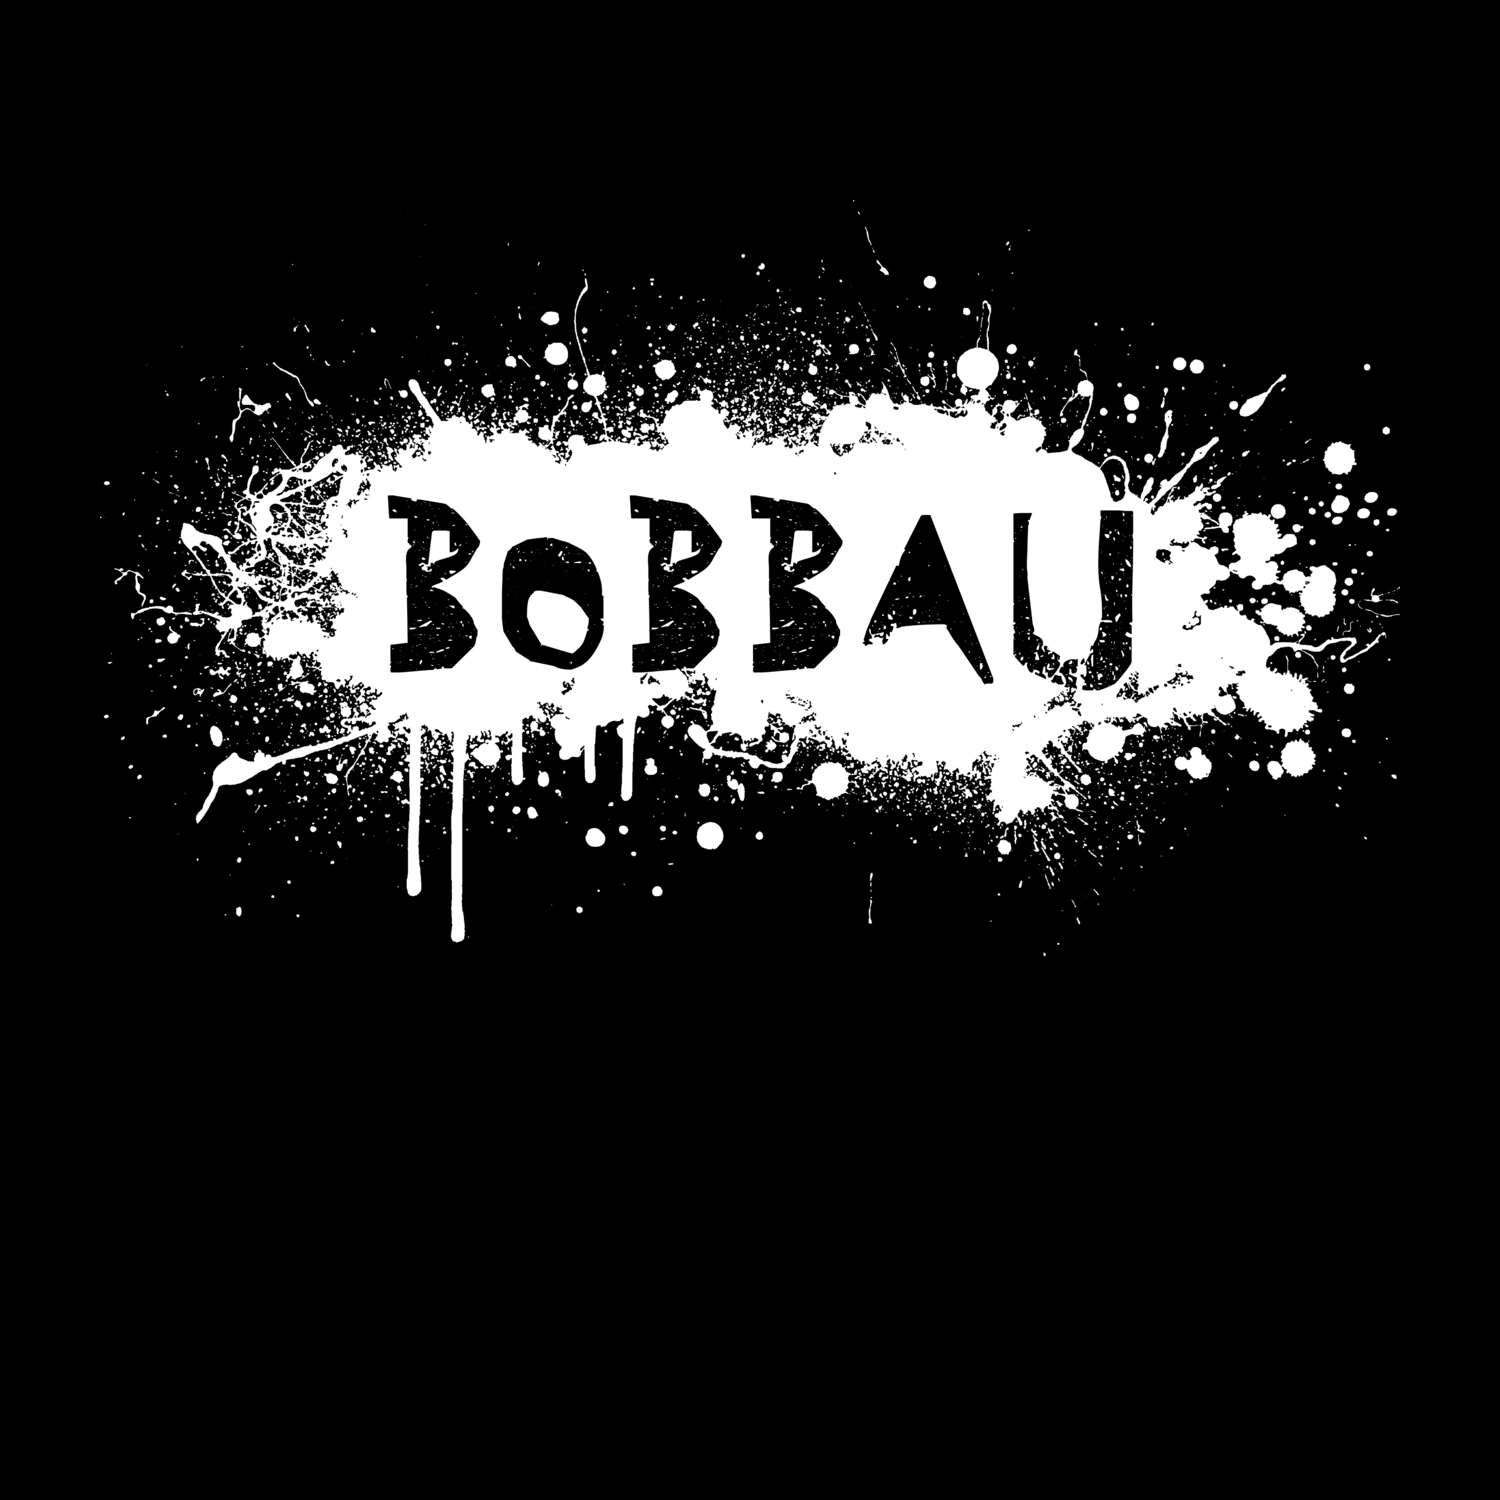 Bobbau T-Shirt »Paint Splash Punk«